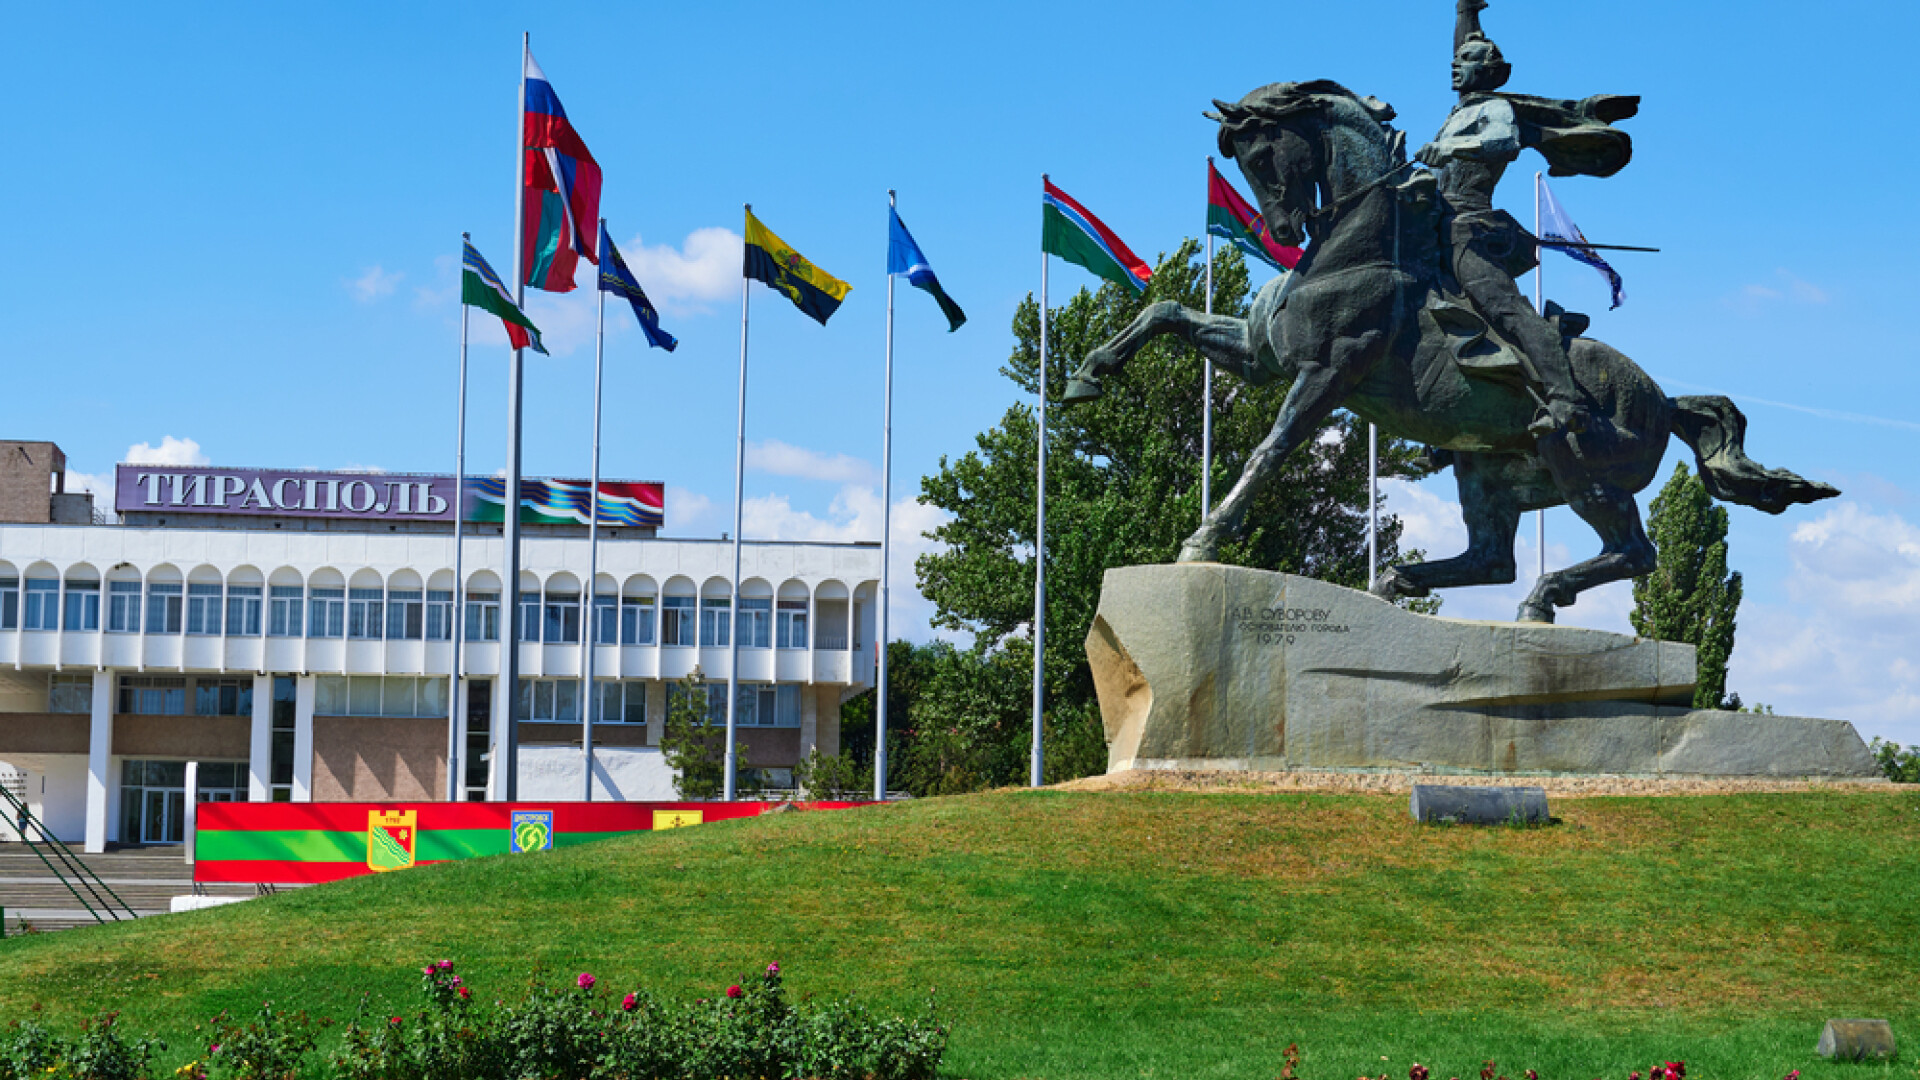 Transnistria vrea să-și declare independența și să adere la Rusia. ”Este o prioritate absolută”